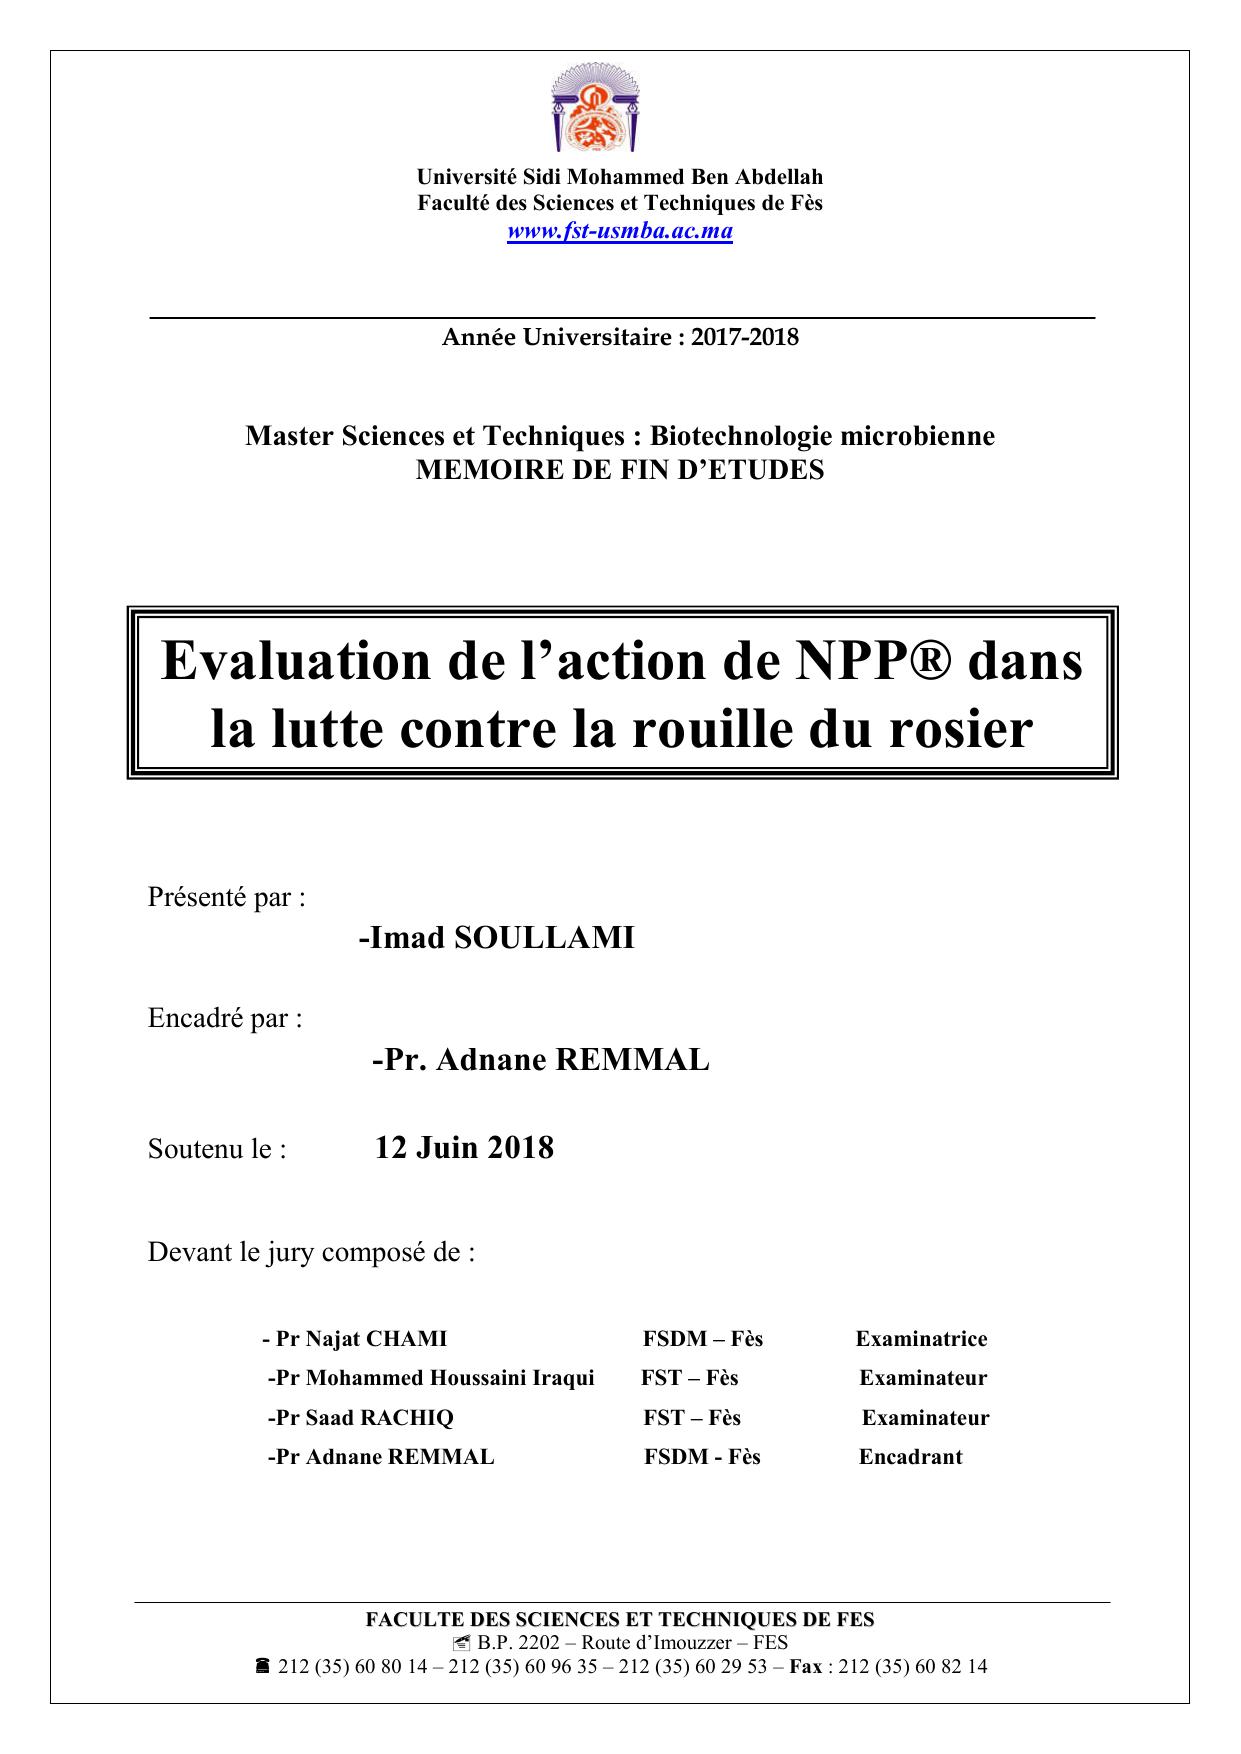 Evaluation de l’action de NPP® dans la lutte contre la rouille du rosier